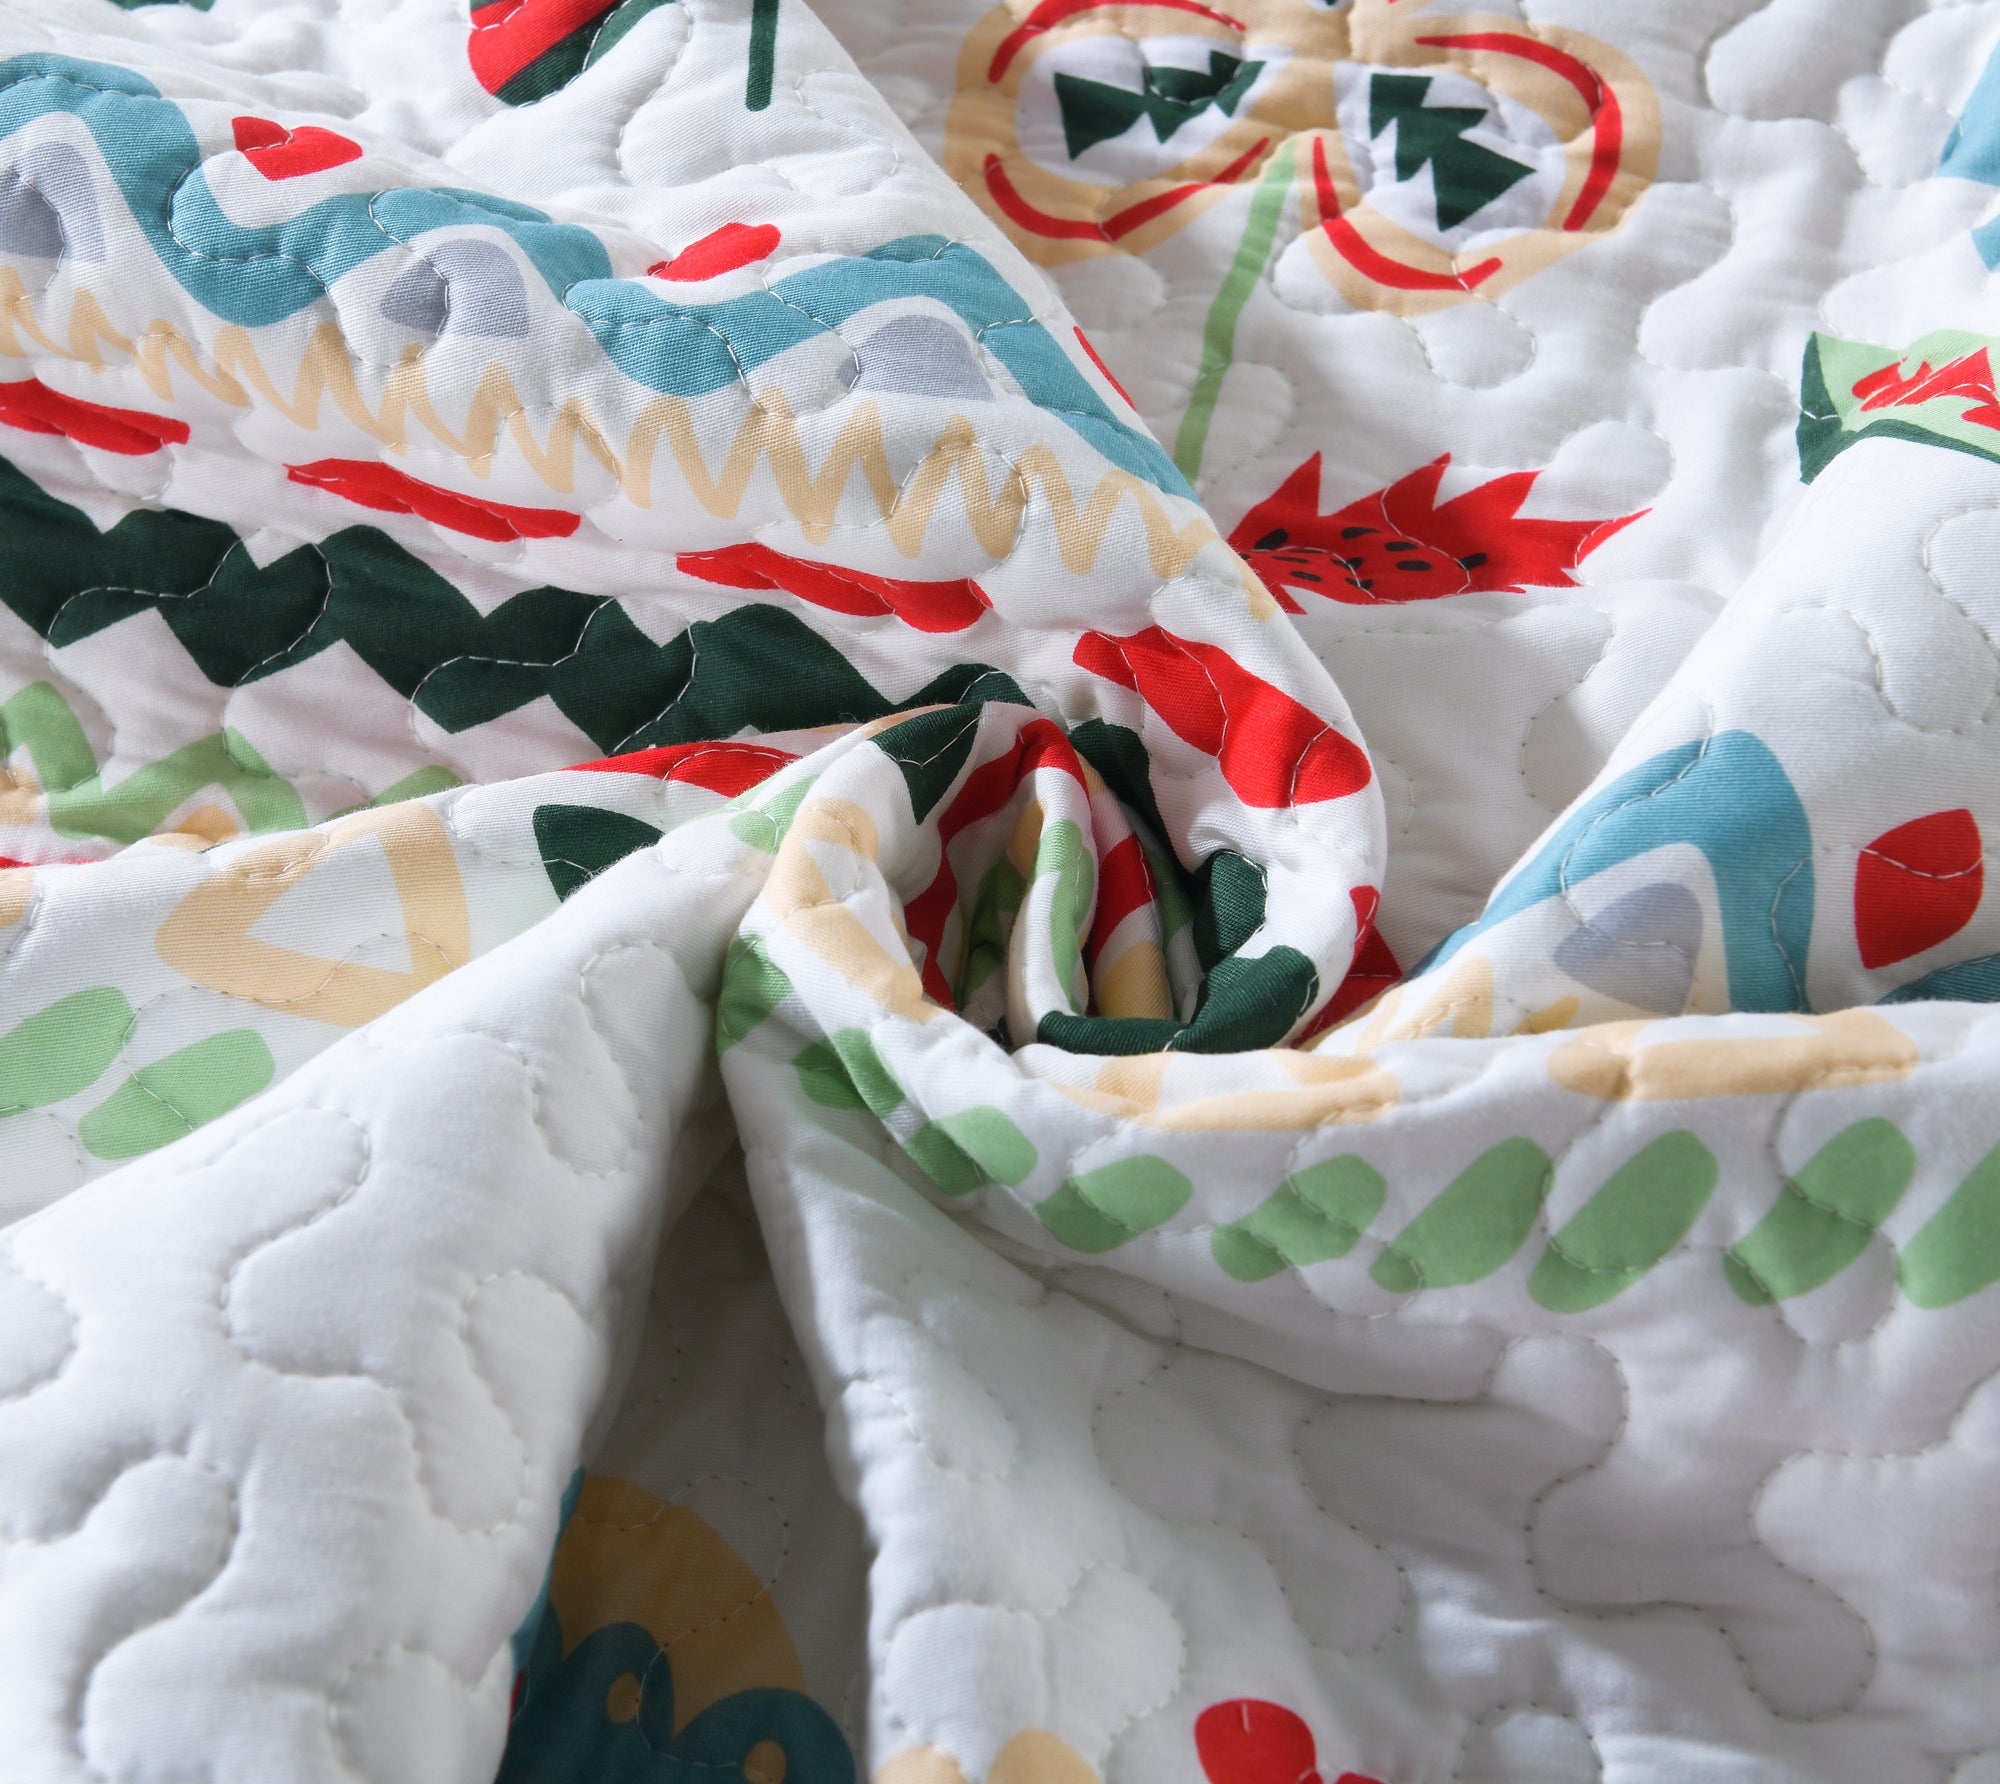 100% Cotton Kids Quilt Bedspread Set for Teens Girls Bedding LiTa